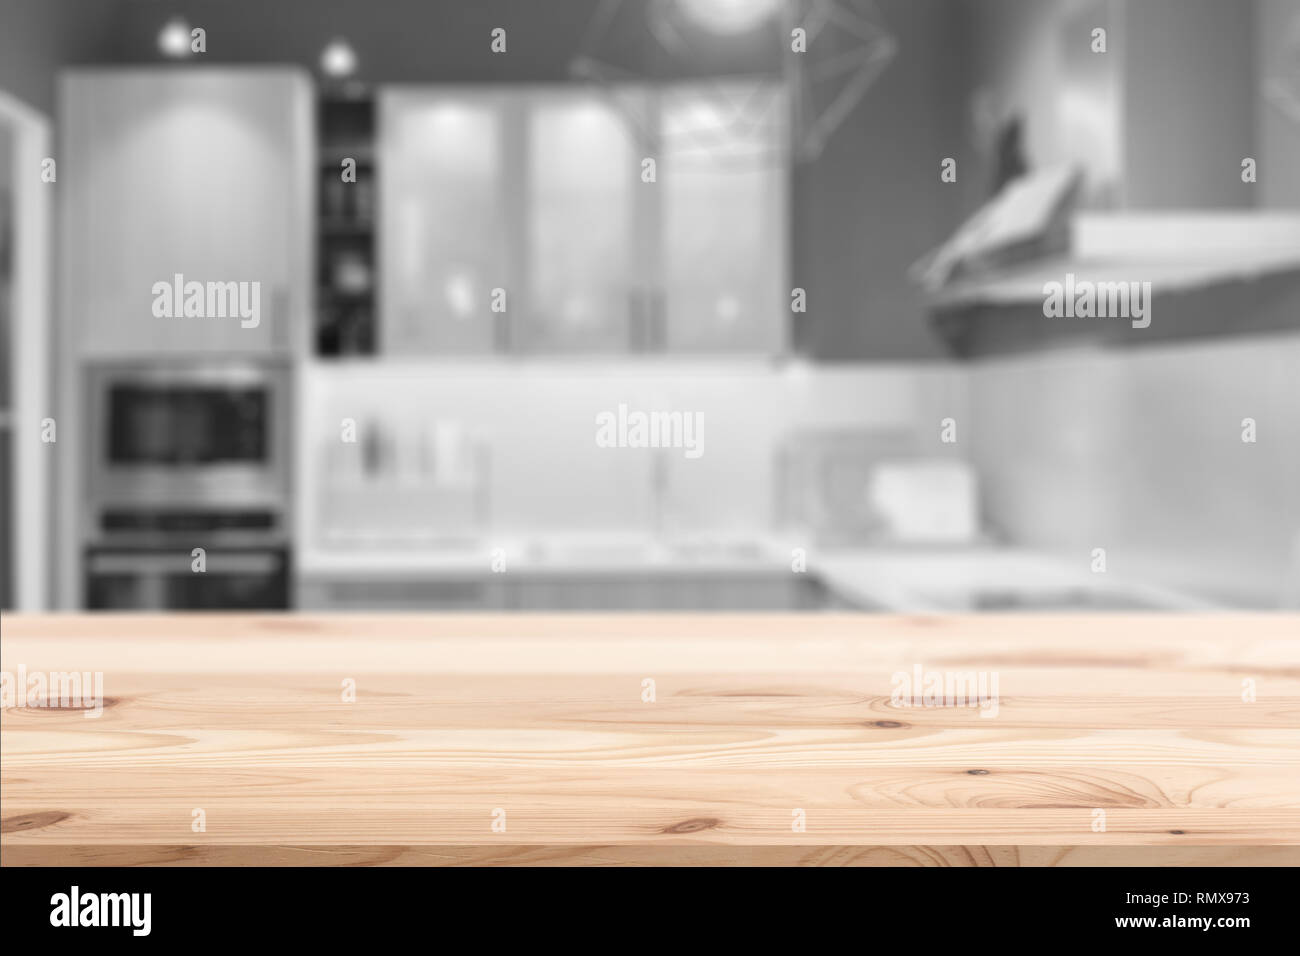 Holz Tisch auf Blur sauber Home Küche Hintergrund für Montage Produkt anzeigen Design vorlage. Stockfoto